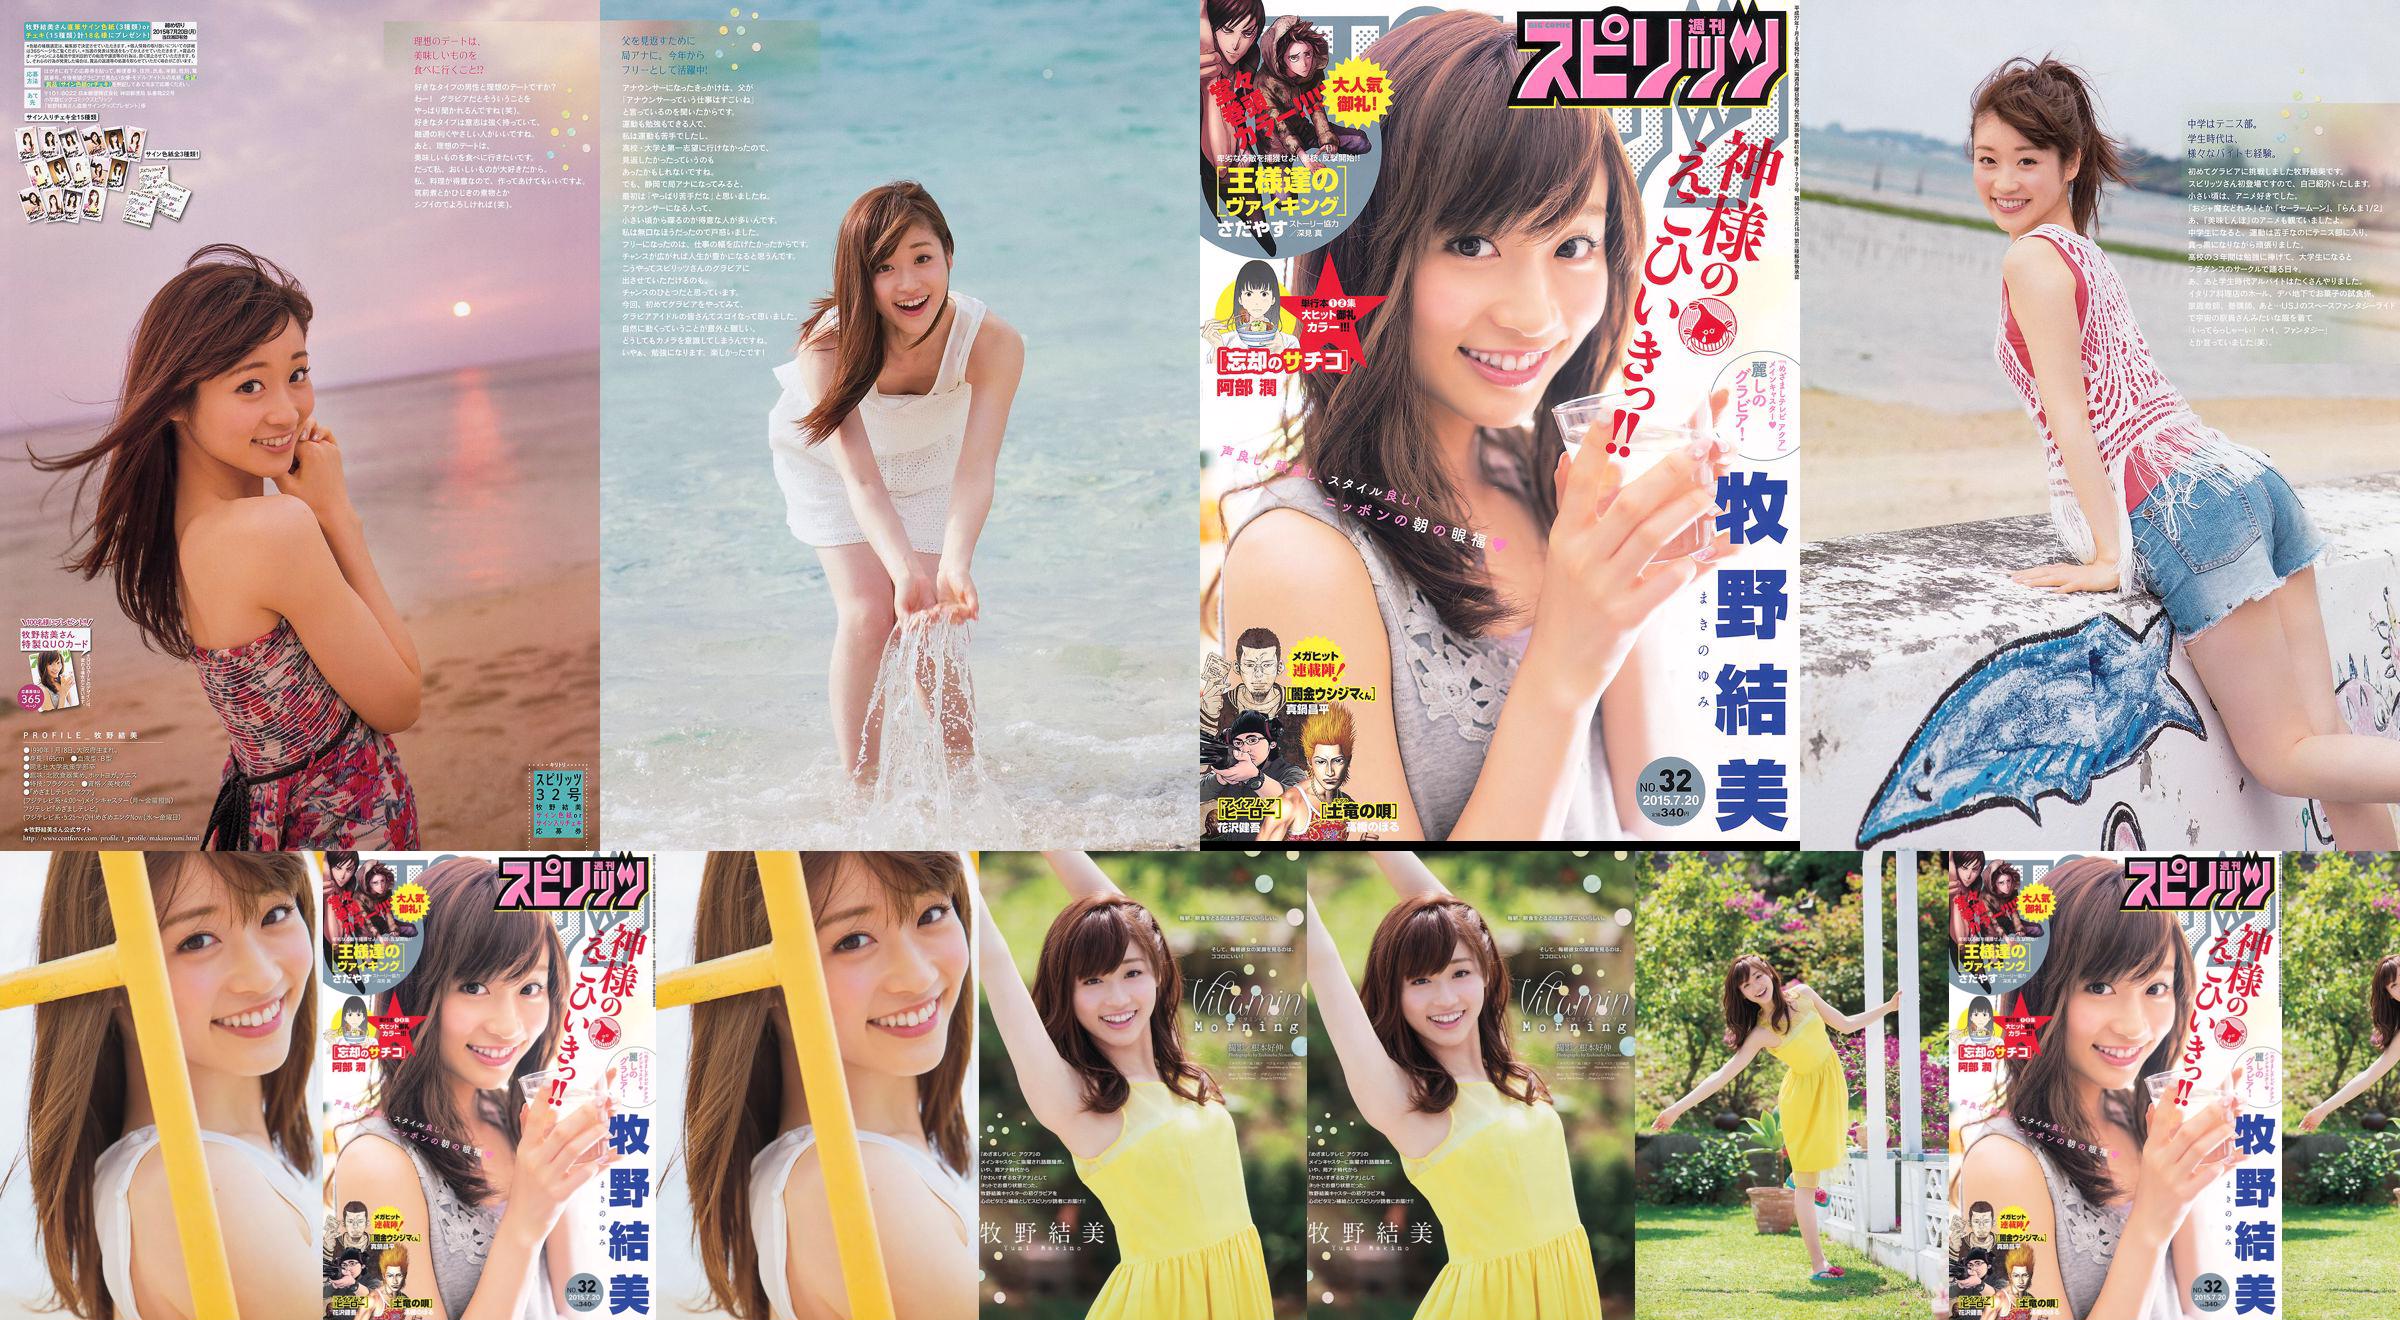 [Wöchentliche große Comic-Geister] Yumi Makino 2015 No.32 Photo Magazine No.2049ef Seite 1